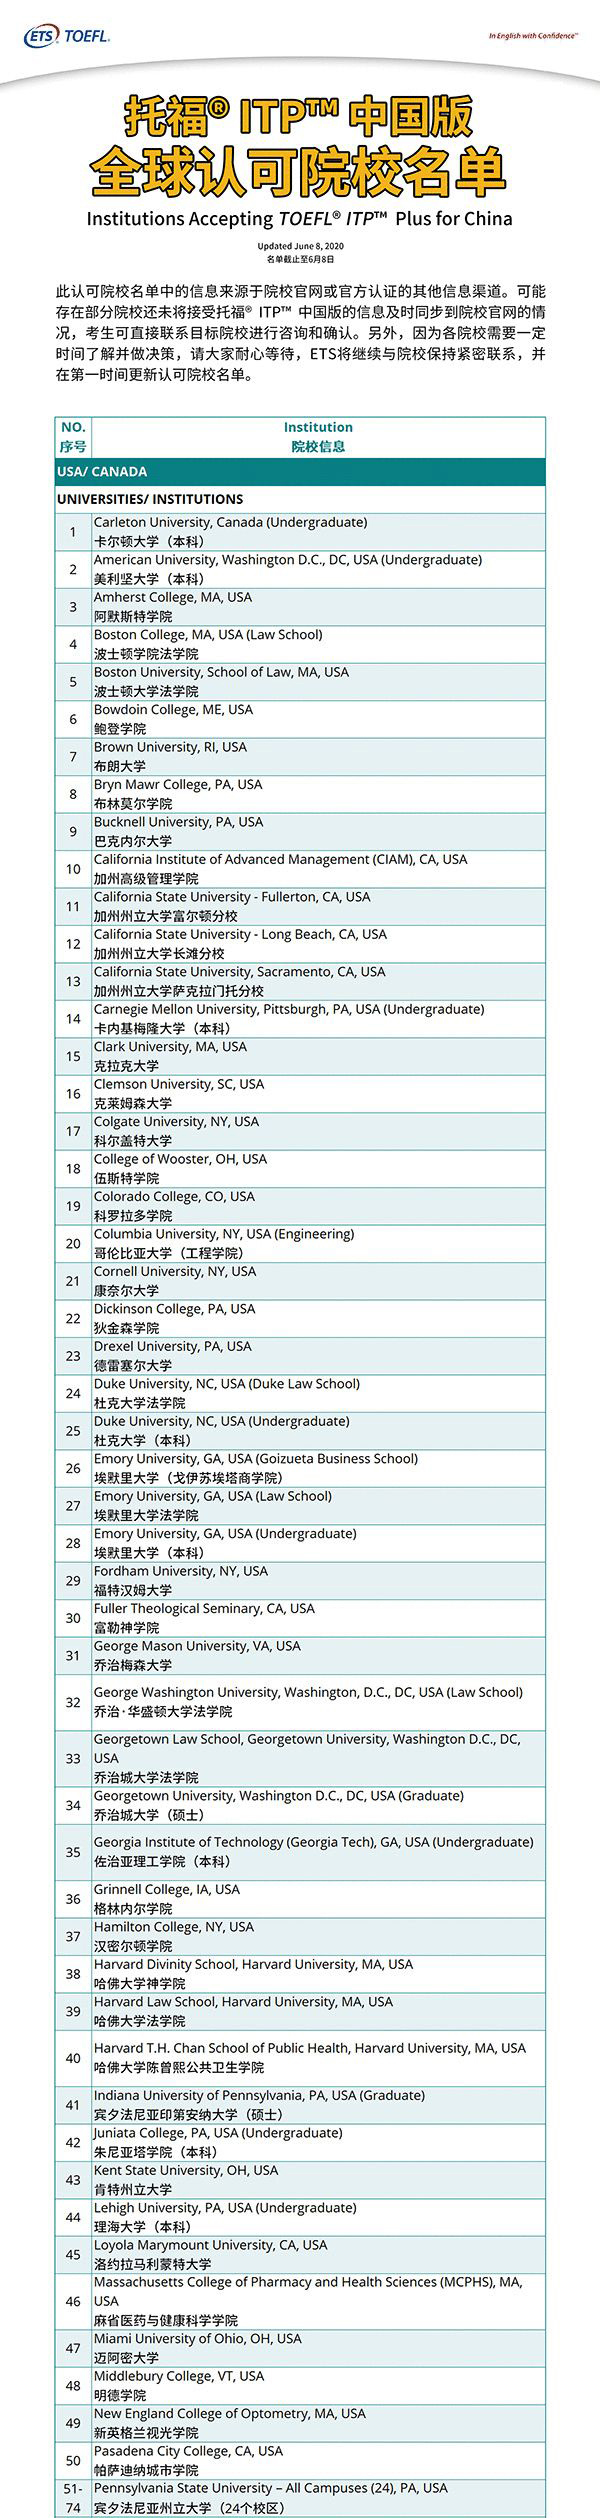 托福ITP中国版8月考位已放出!认可院校增至近200所!